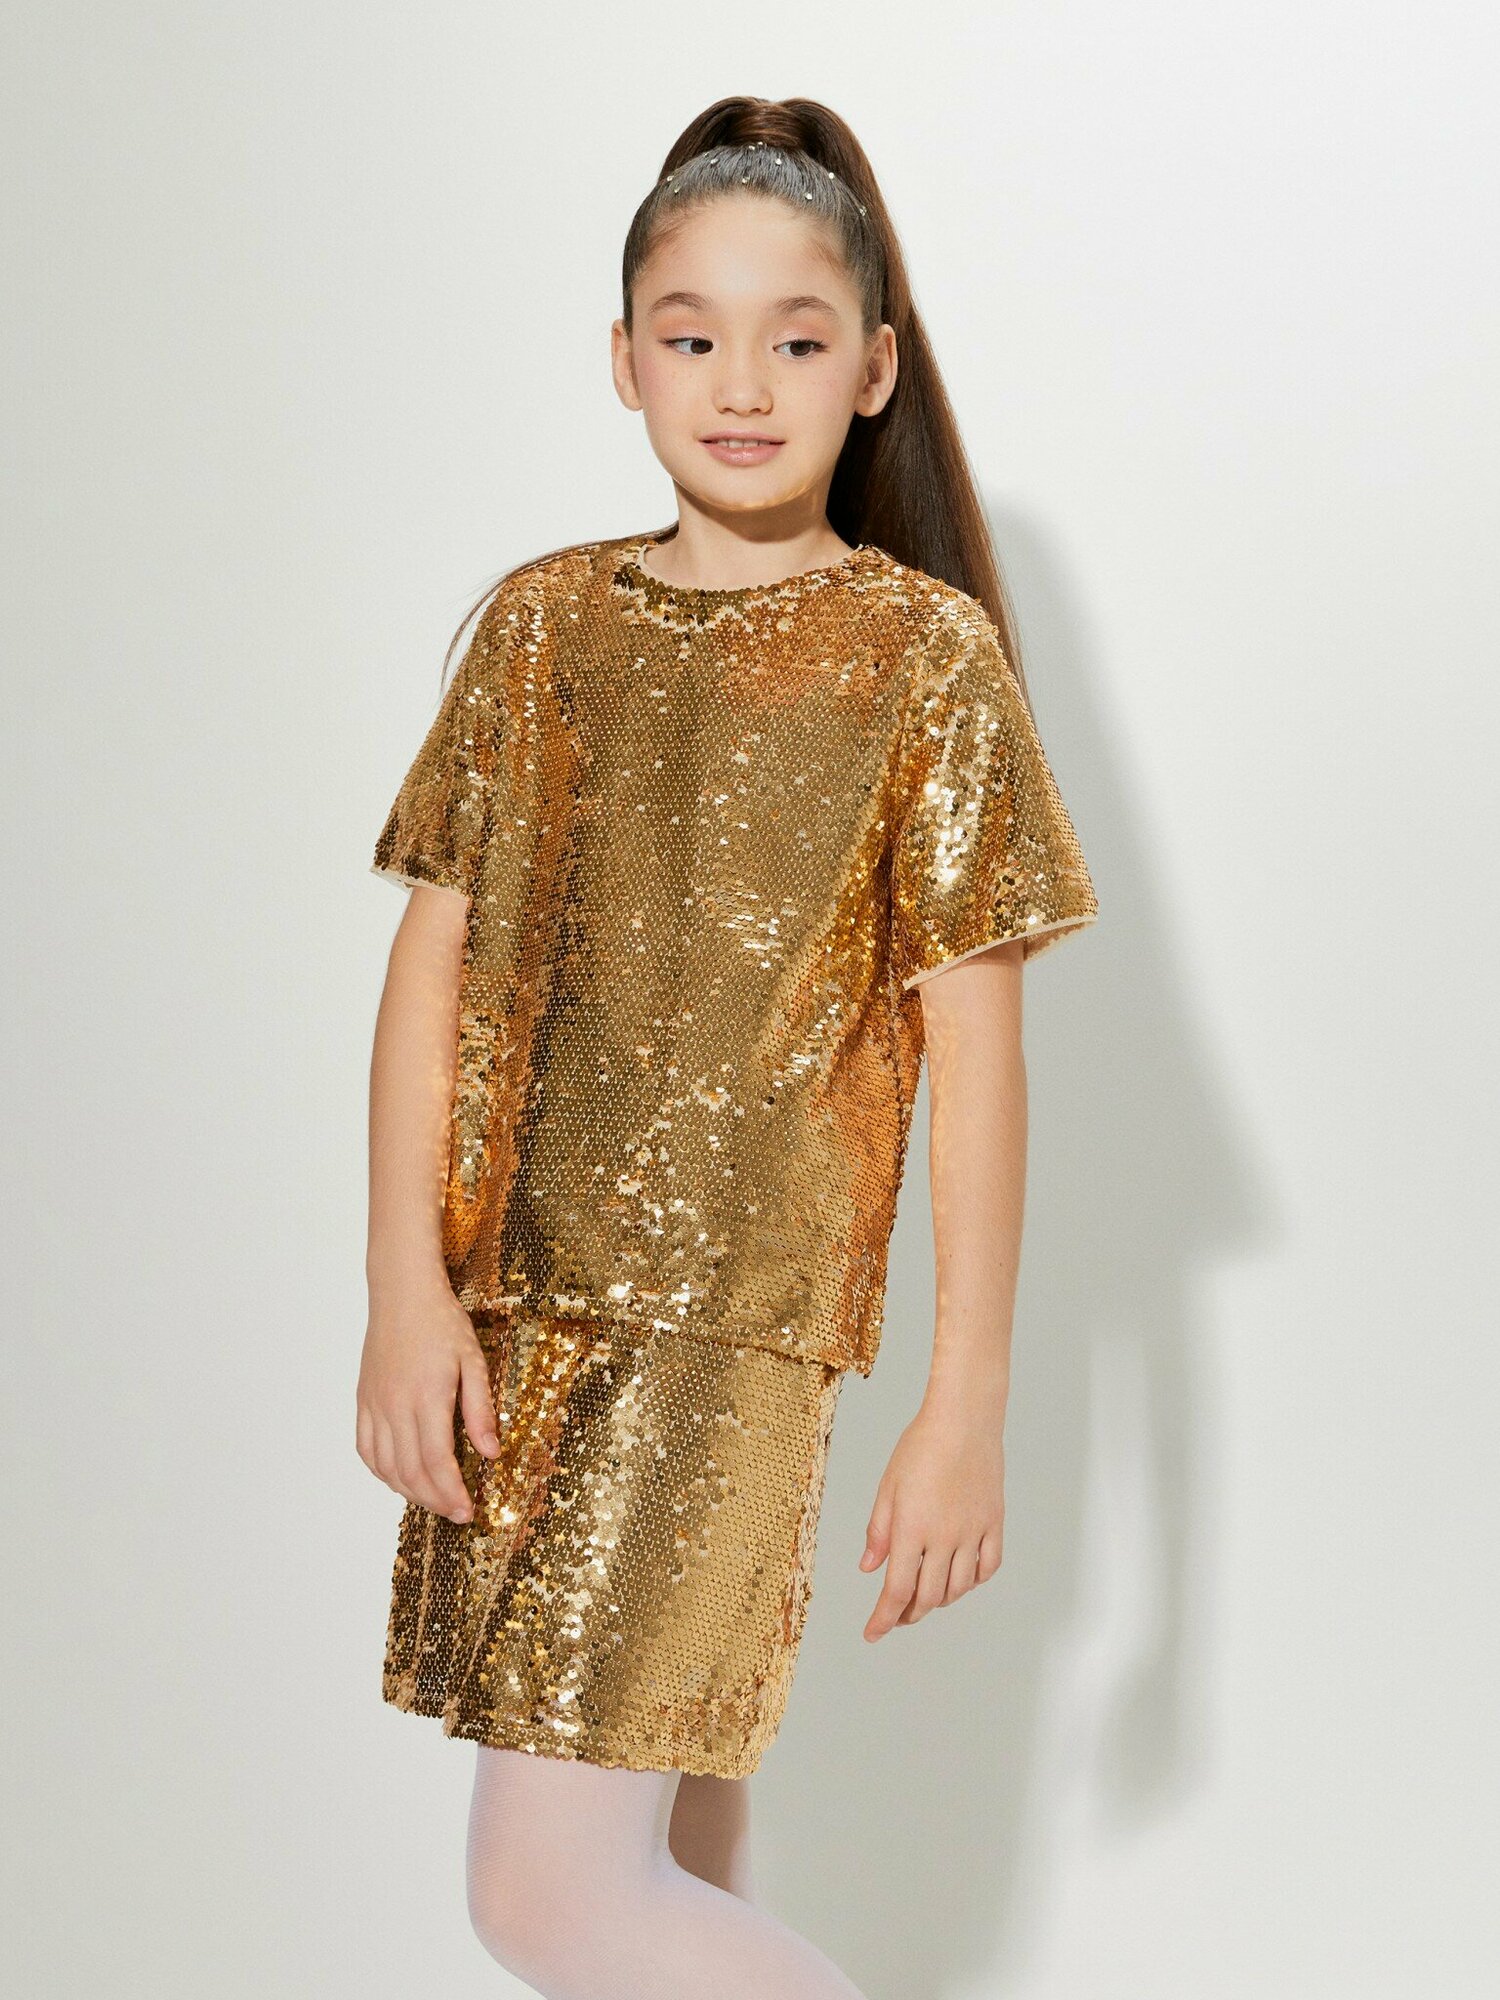 Блузка с коротким рукавом ACOOLA Jastinblouse золотой для девочек 128 размер